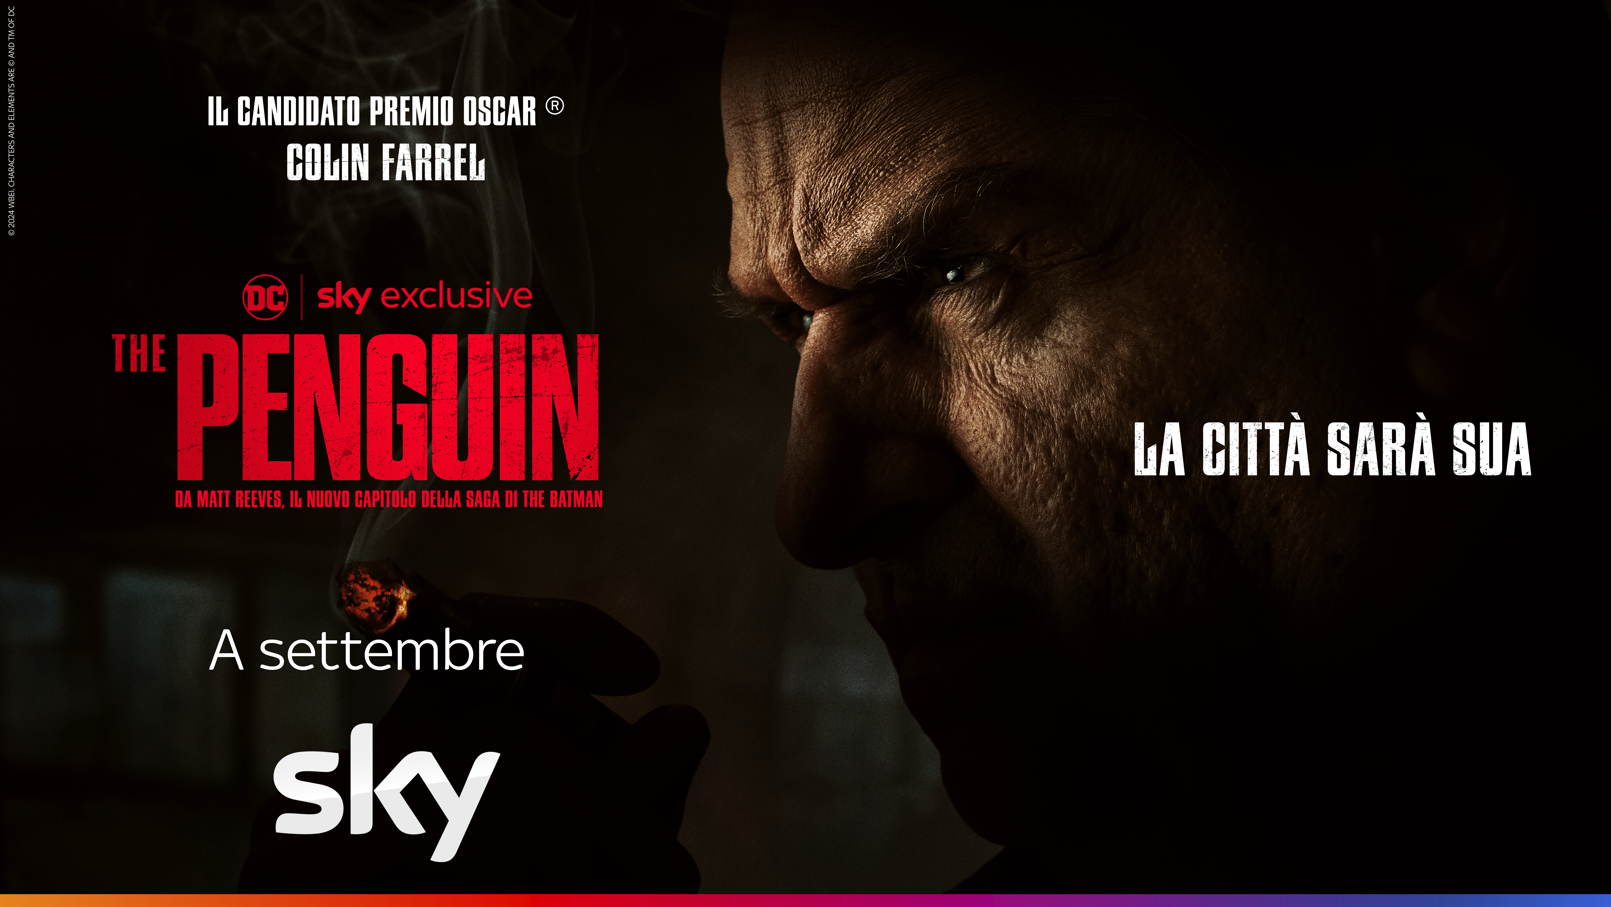 THE PENGUIN: a settembre in esclusiva su Sky e NOW la serie DC Studios con Colin Farrell, pubblicato il nuovo teaser